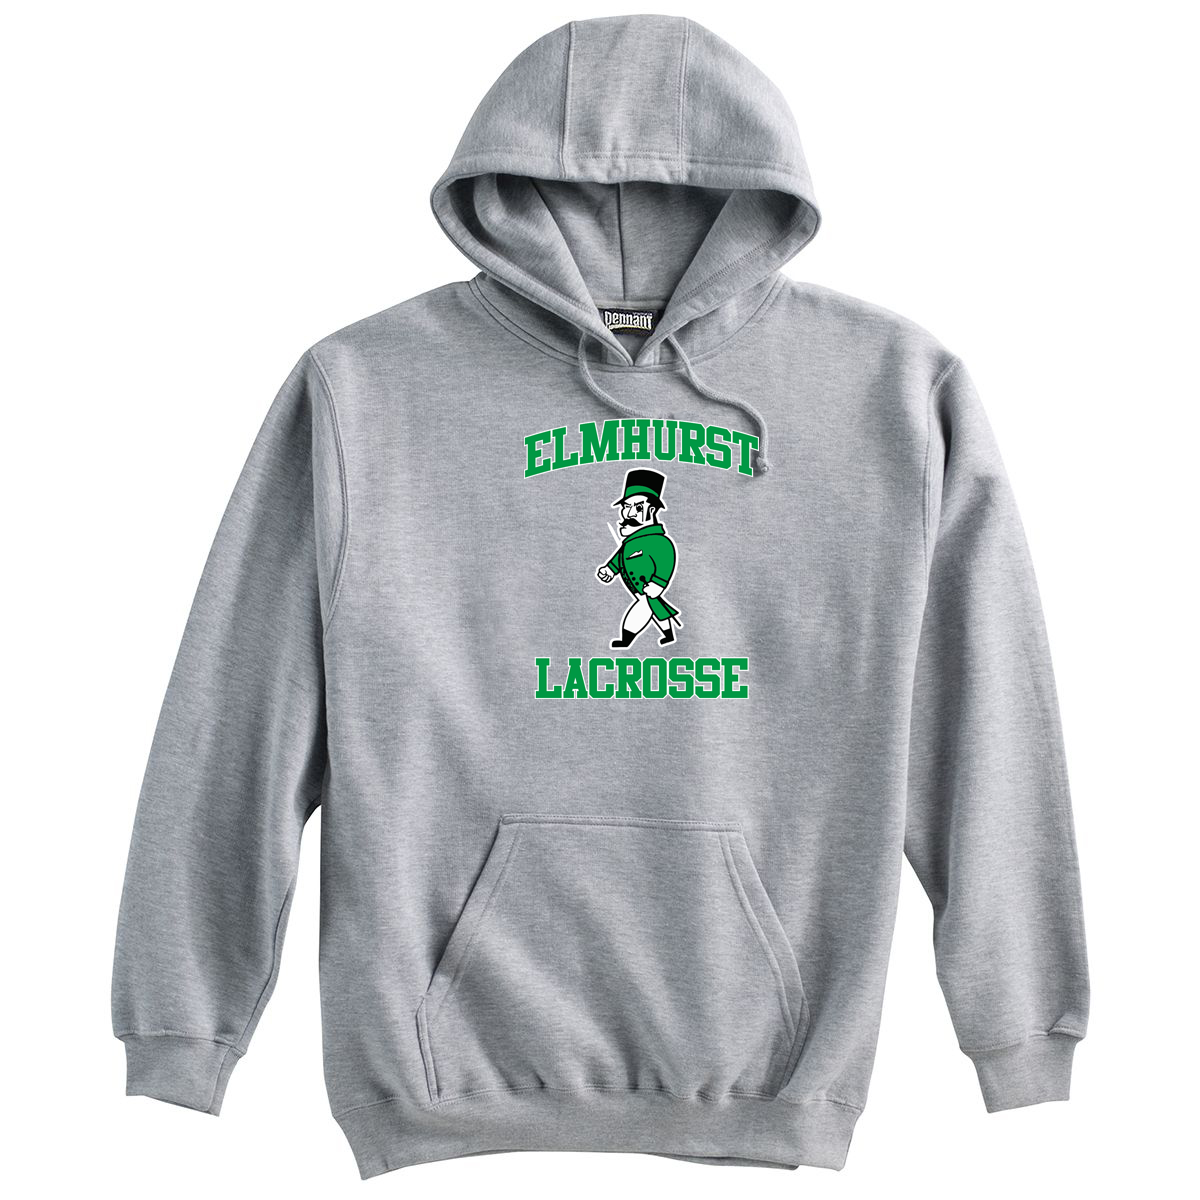 Elmhurst Lacrosse Sweatshirt